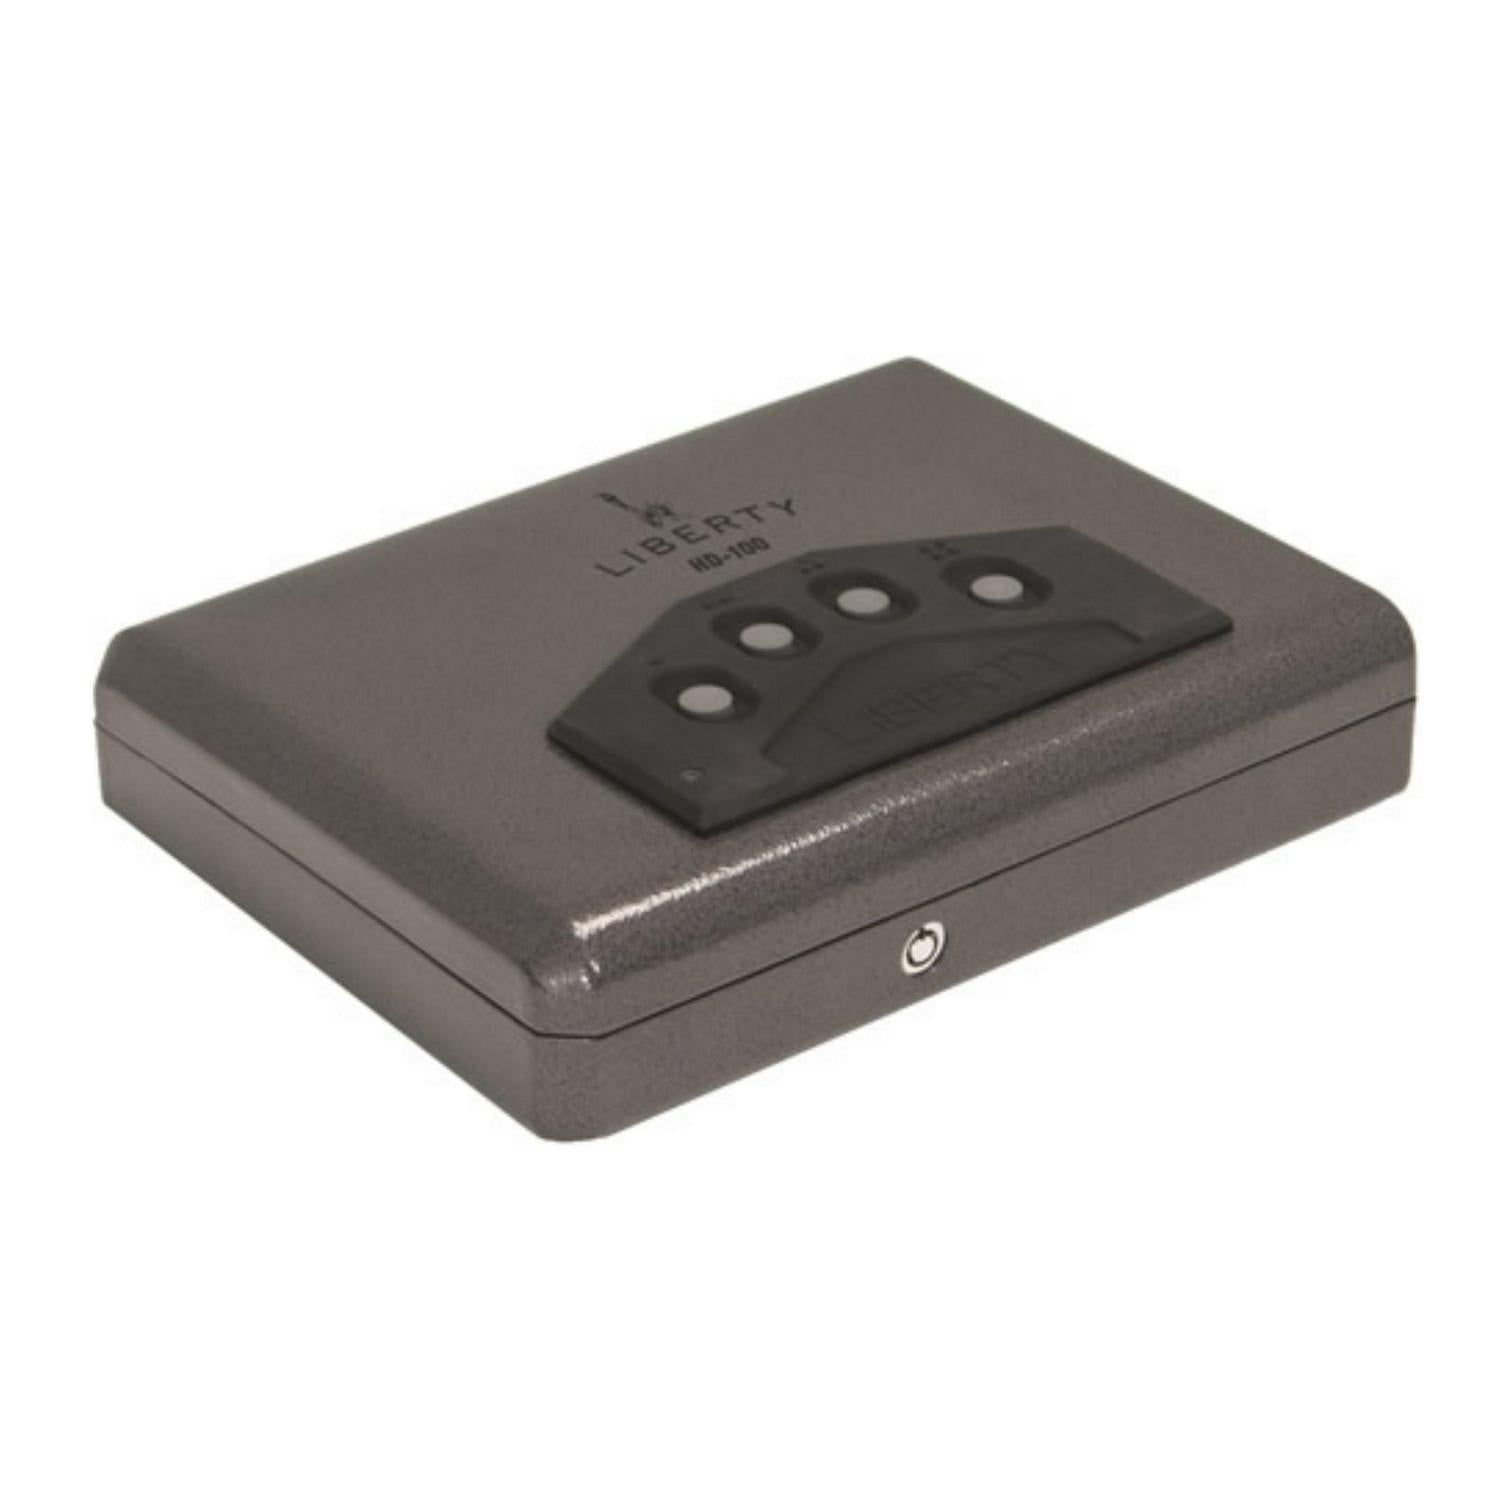 Barska Digital Portable Keypad Safe AX11910 for sale online 